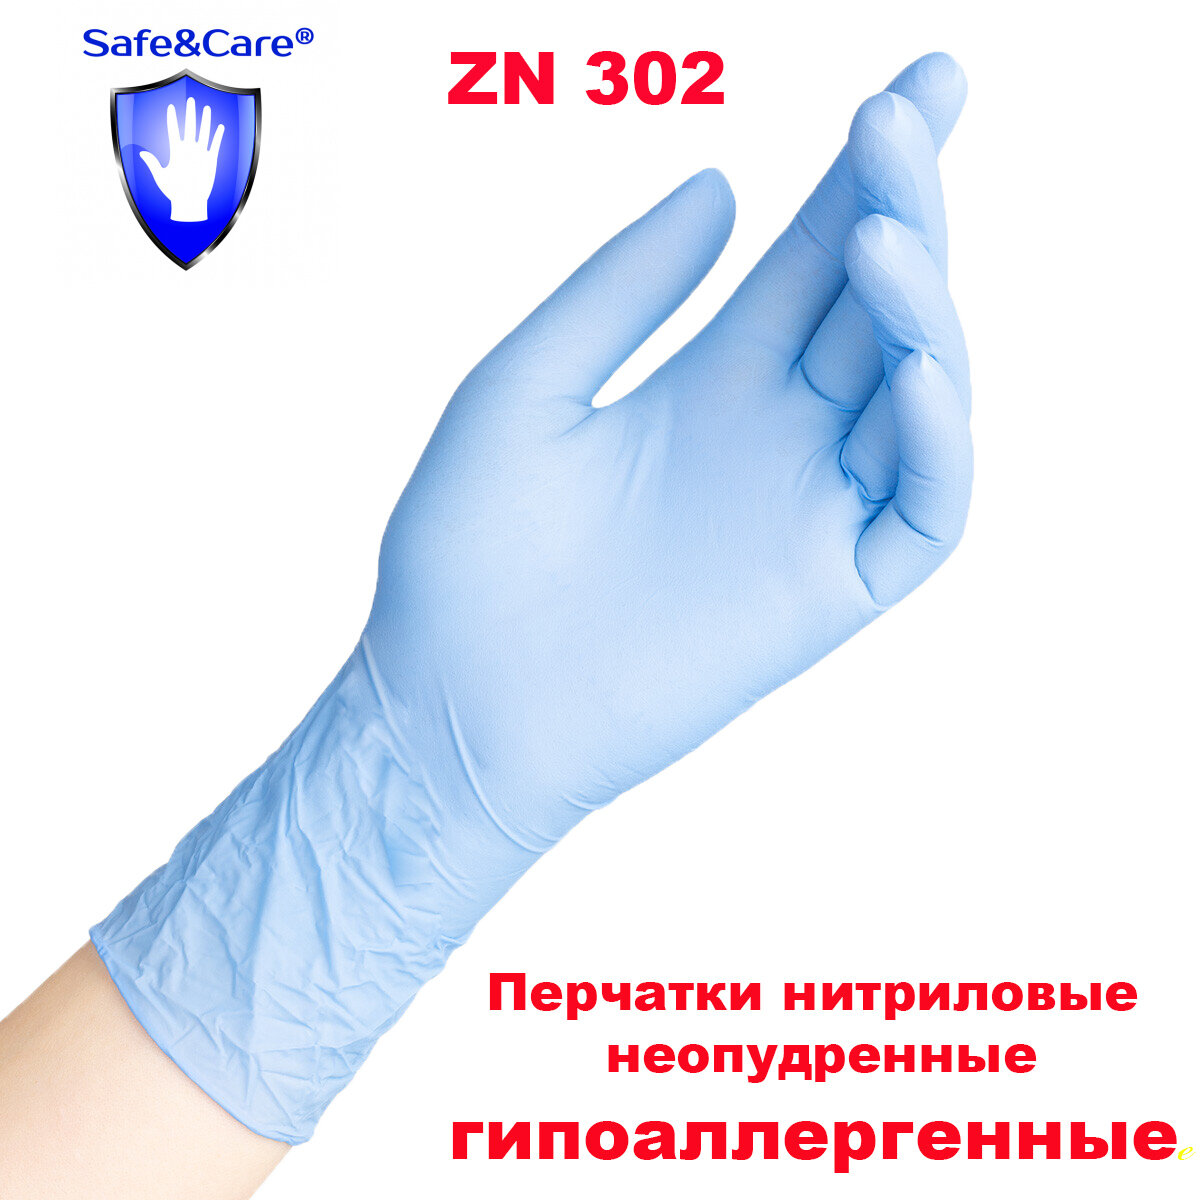 Перчатки Save&Care нитриловые голубые ZN 302 размер S 10 штук